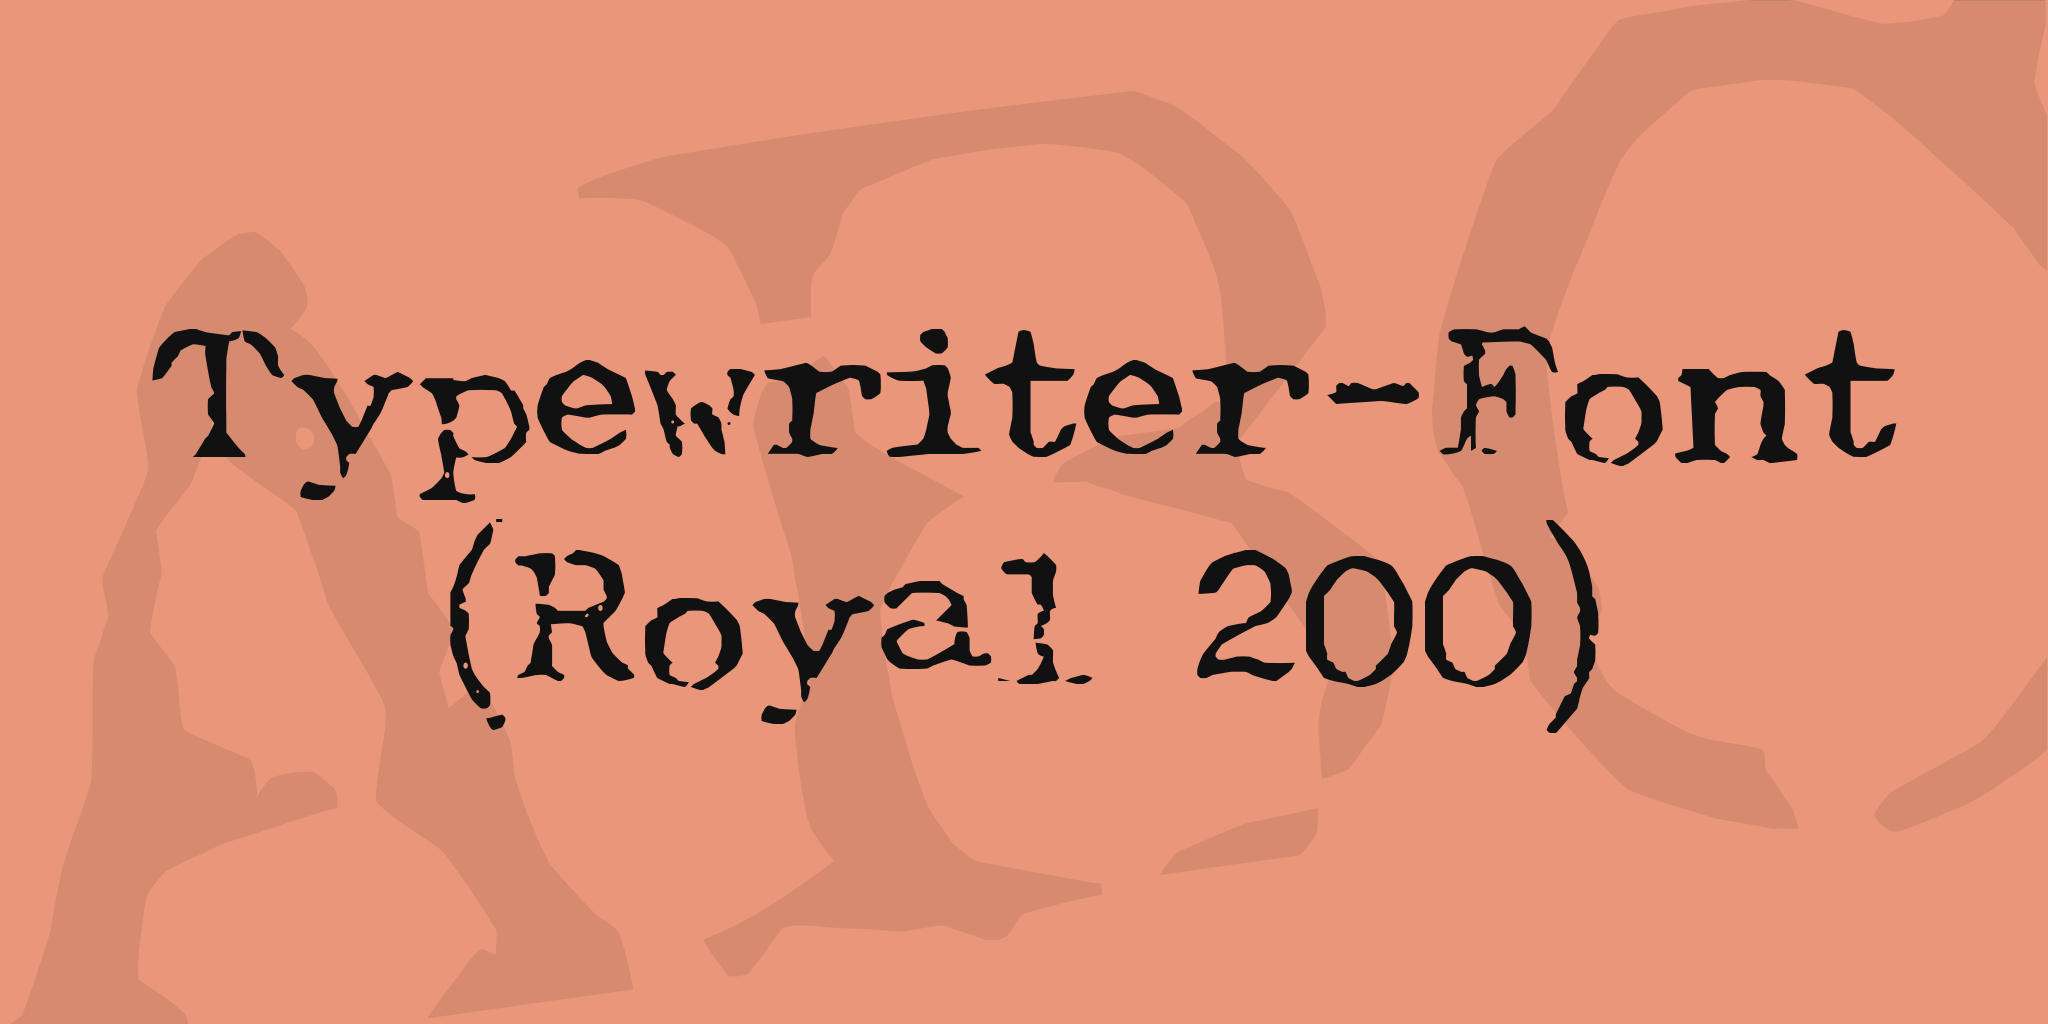 Typewriter Font Royal 200